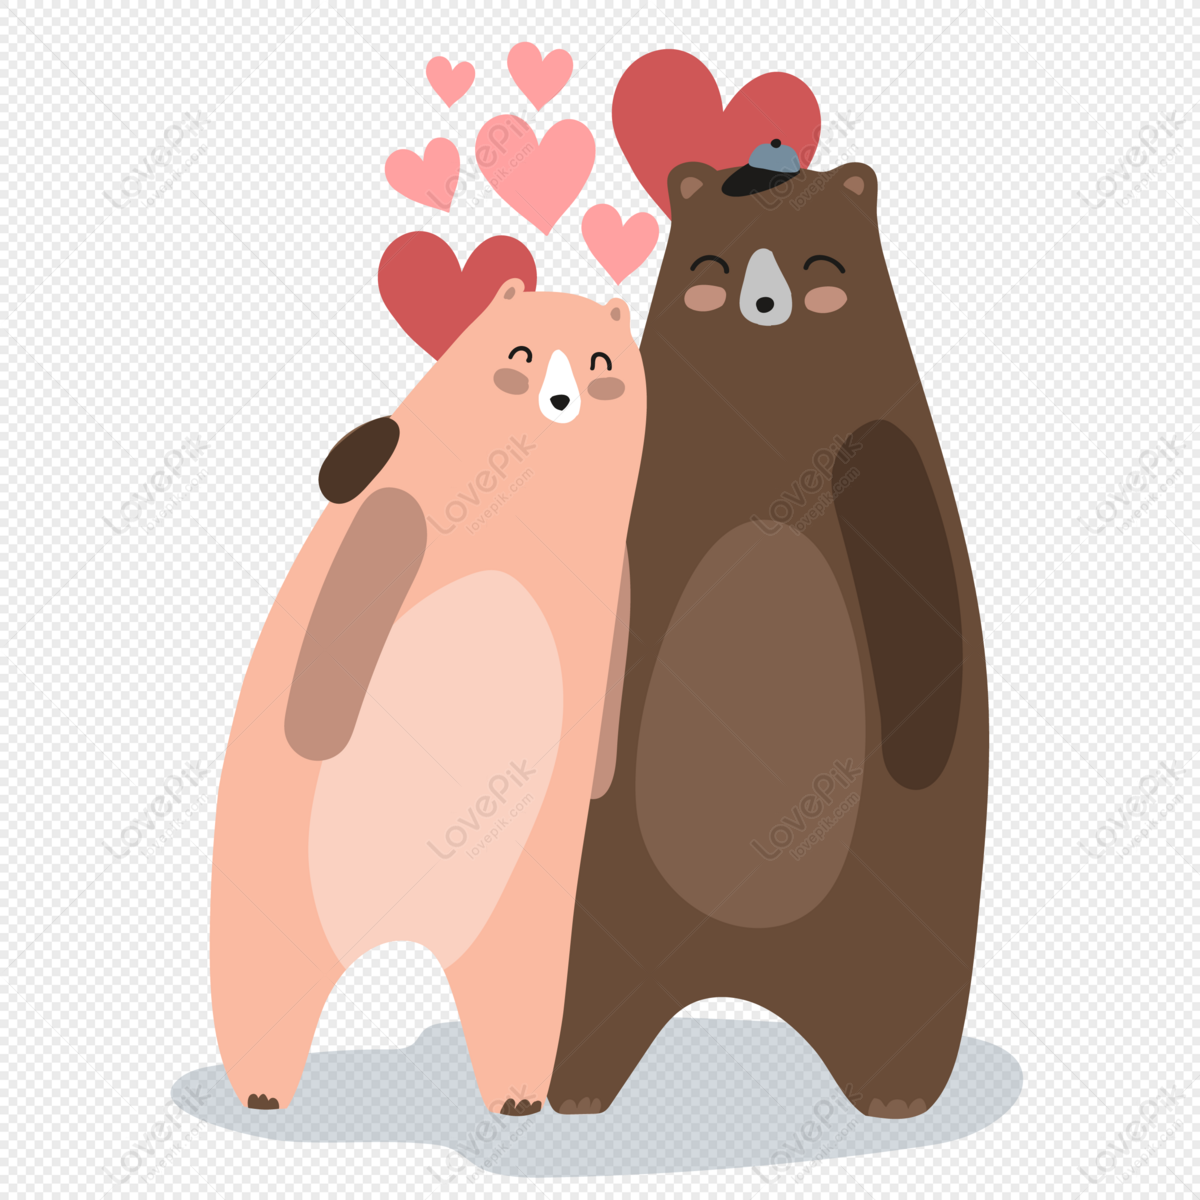 Cute bears cuddle and date - Hãy đến xem những chú gấu xinh xắn dang tay ôm nhau và tận hưởng cuộc hẹn hò ngọt ngào của chúng. Bạn sẽ không thể rời mắt khỏi những hình ảnh đáng yêu này!